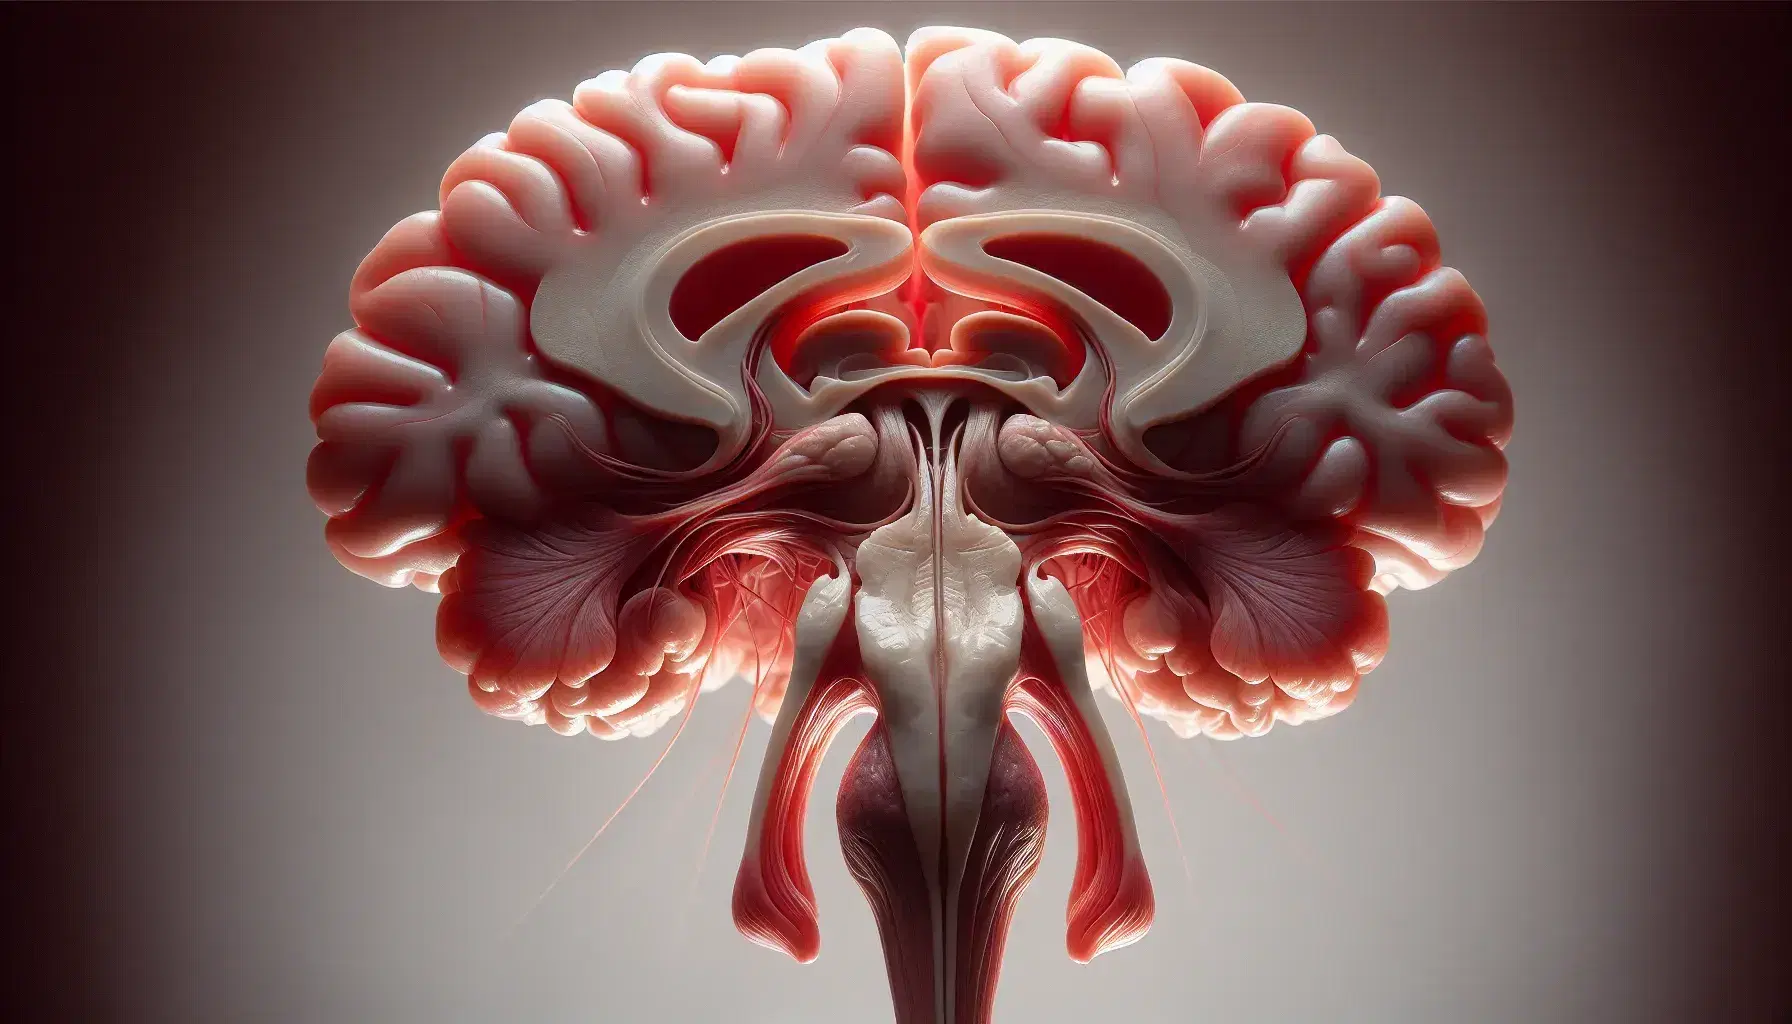 Representación anatómica tridimensional del cerebro humano, destacando el hipotálamo y la glándula pituitaria en tonos rojos y rosas, con un fondo neutro.